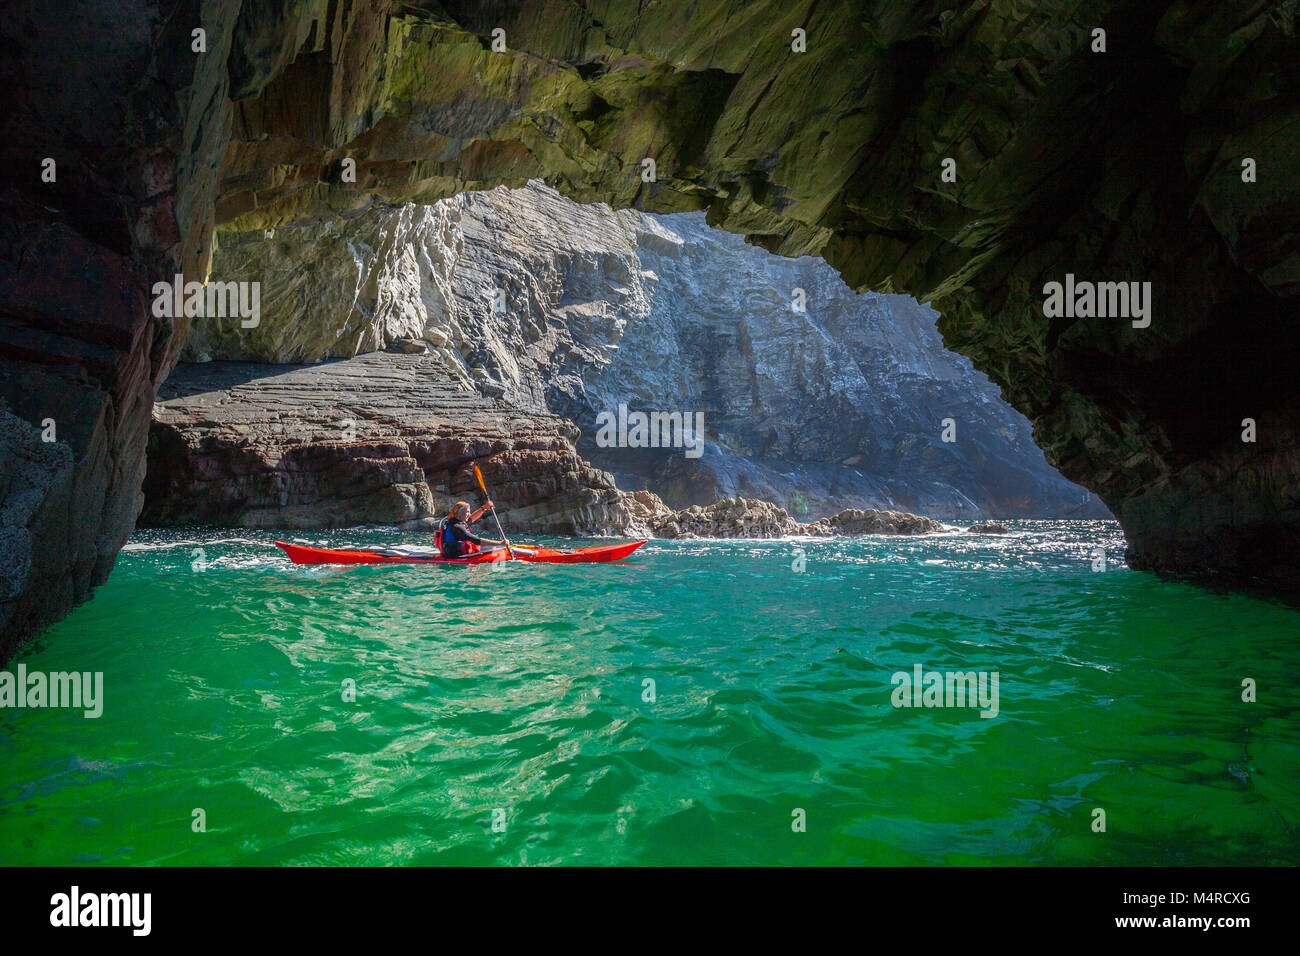 Kayakiste de mer à la découverte d'une grotte près de Glencolmcille, comté de Donegal, Irlande. Banque D'Images